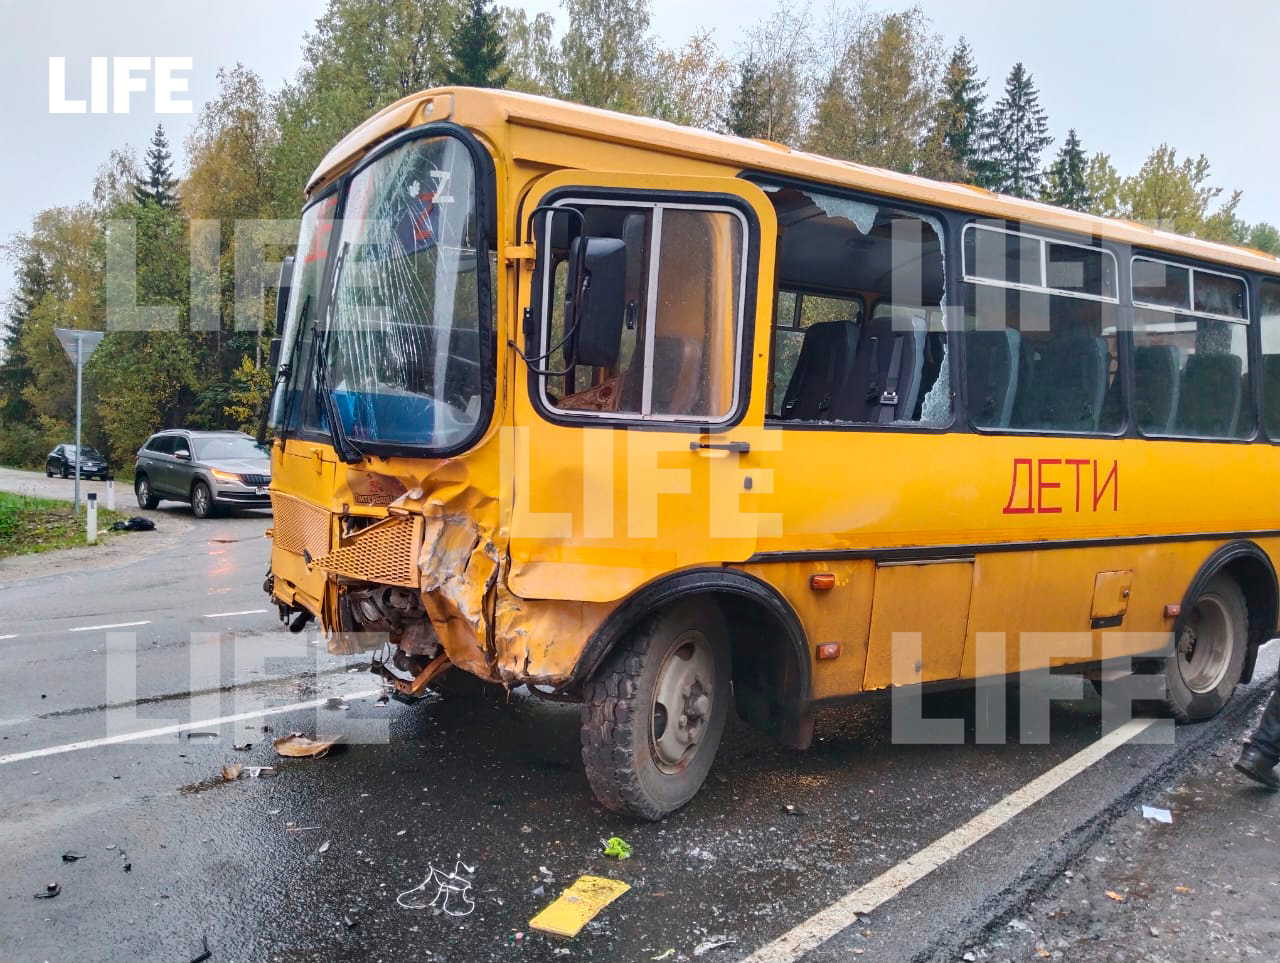 Последствия ДТП с школьным автобусом и иномаркой в Ленобласти. Фото © LIFE